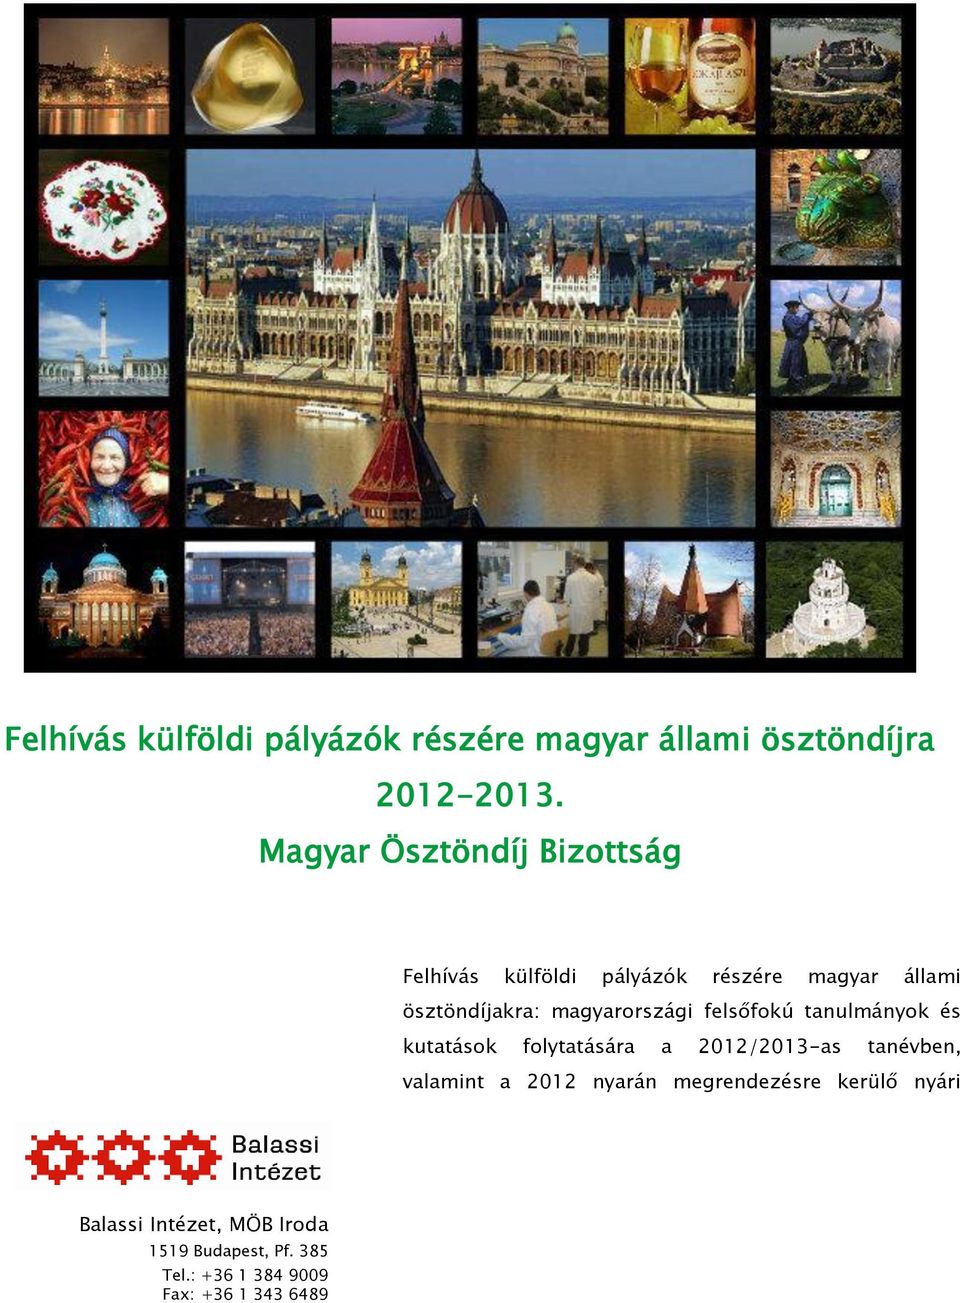 magyarországi felsőfokú tanulmányok és kutatások folytatására a 2012/2013-as tanévben, valamint a 2012